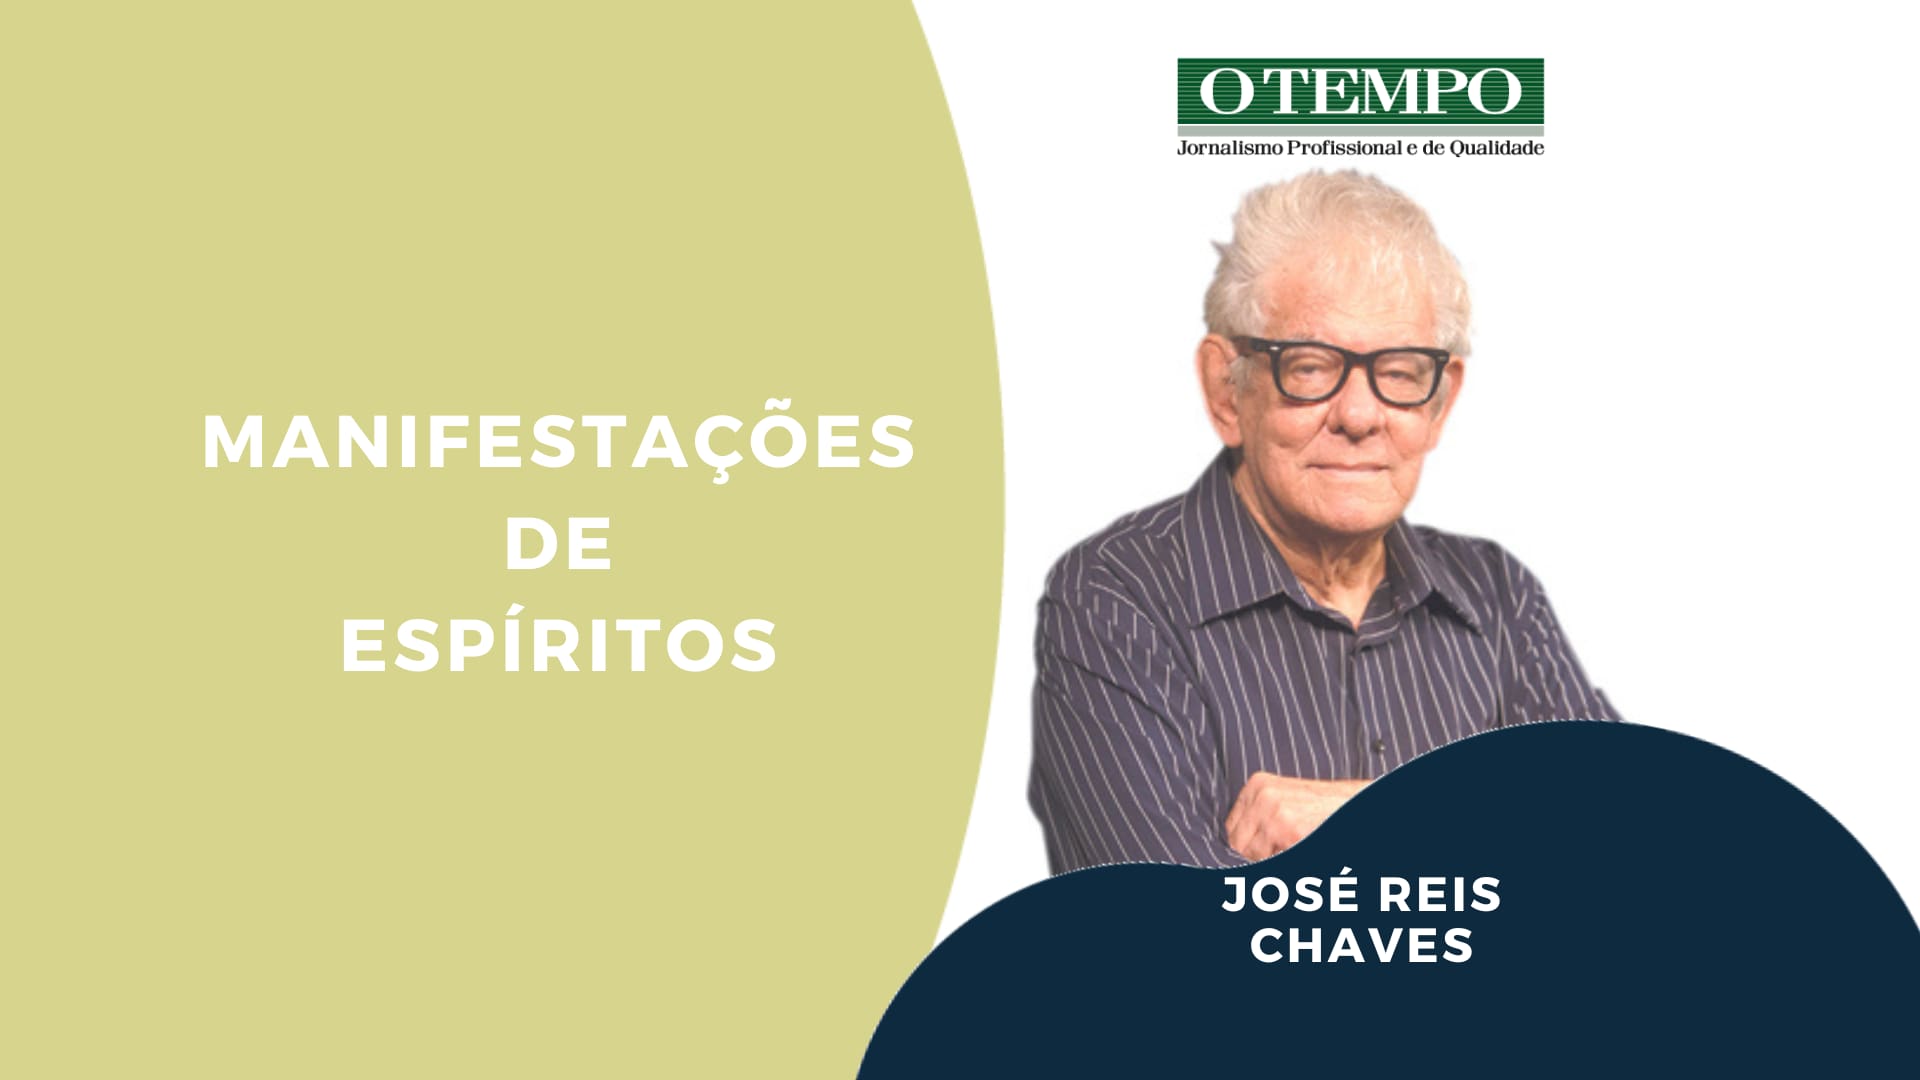 Leia artigo de José Reis Chaves sobre manifestações dos espíritos, Pentecostes e o Espirito Santo